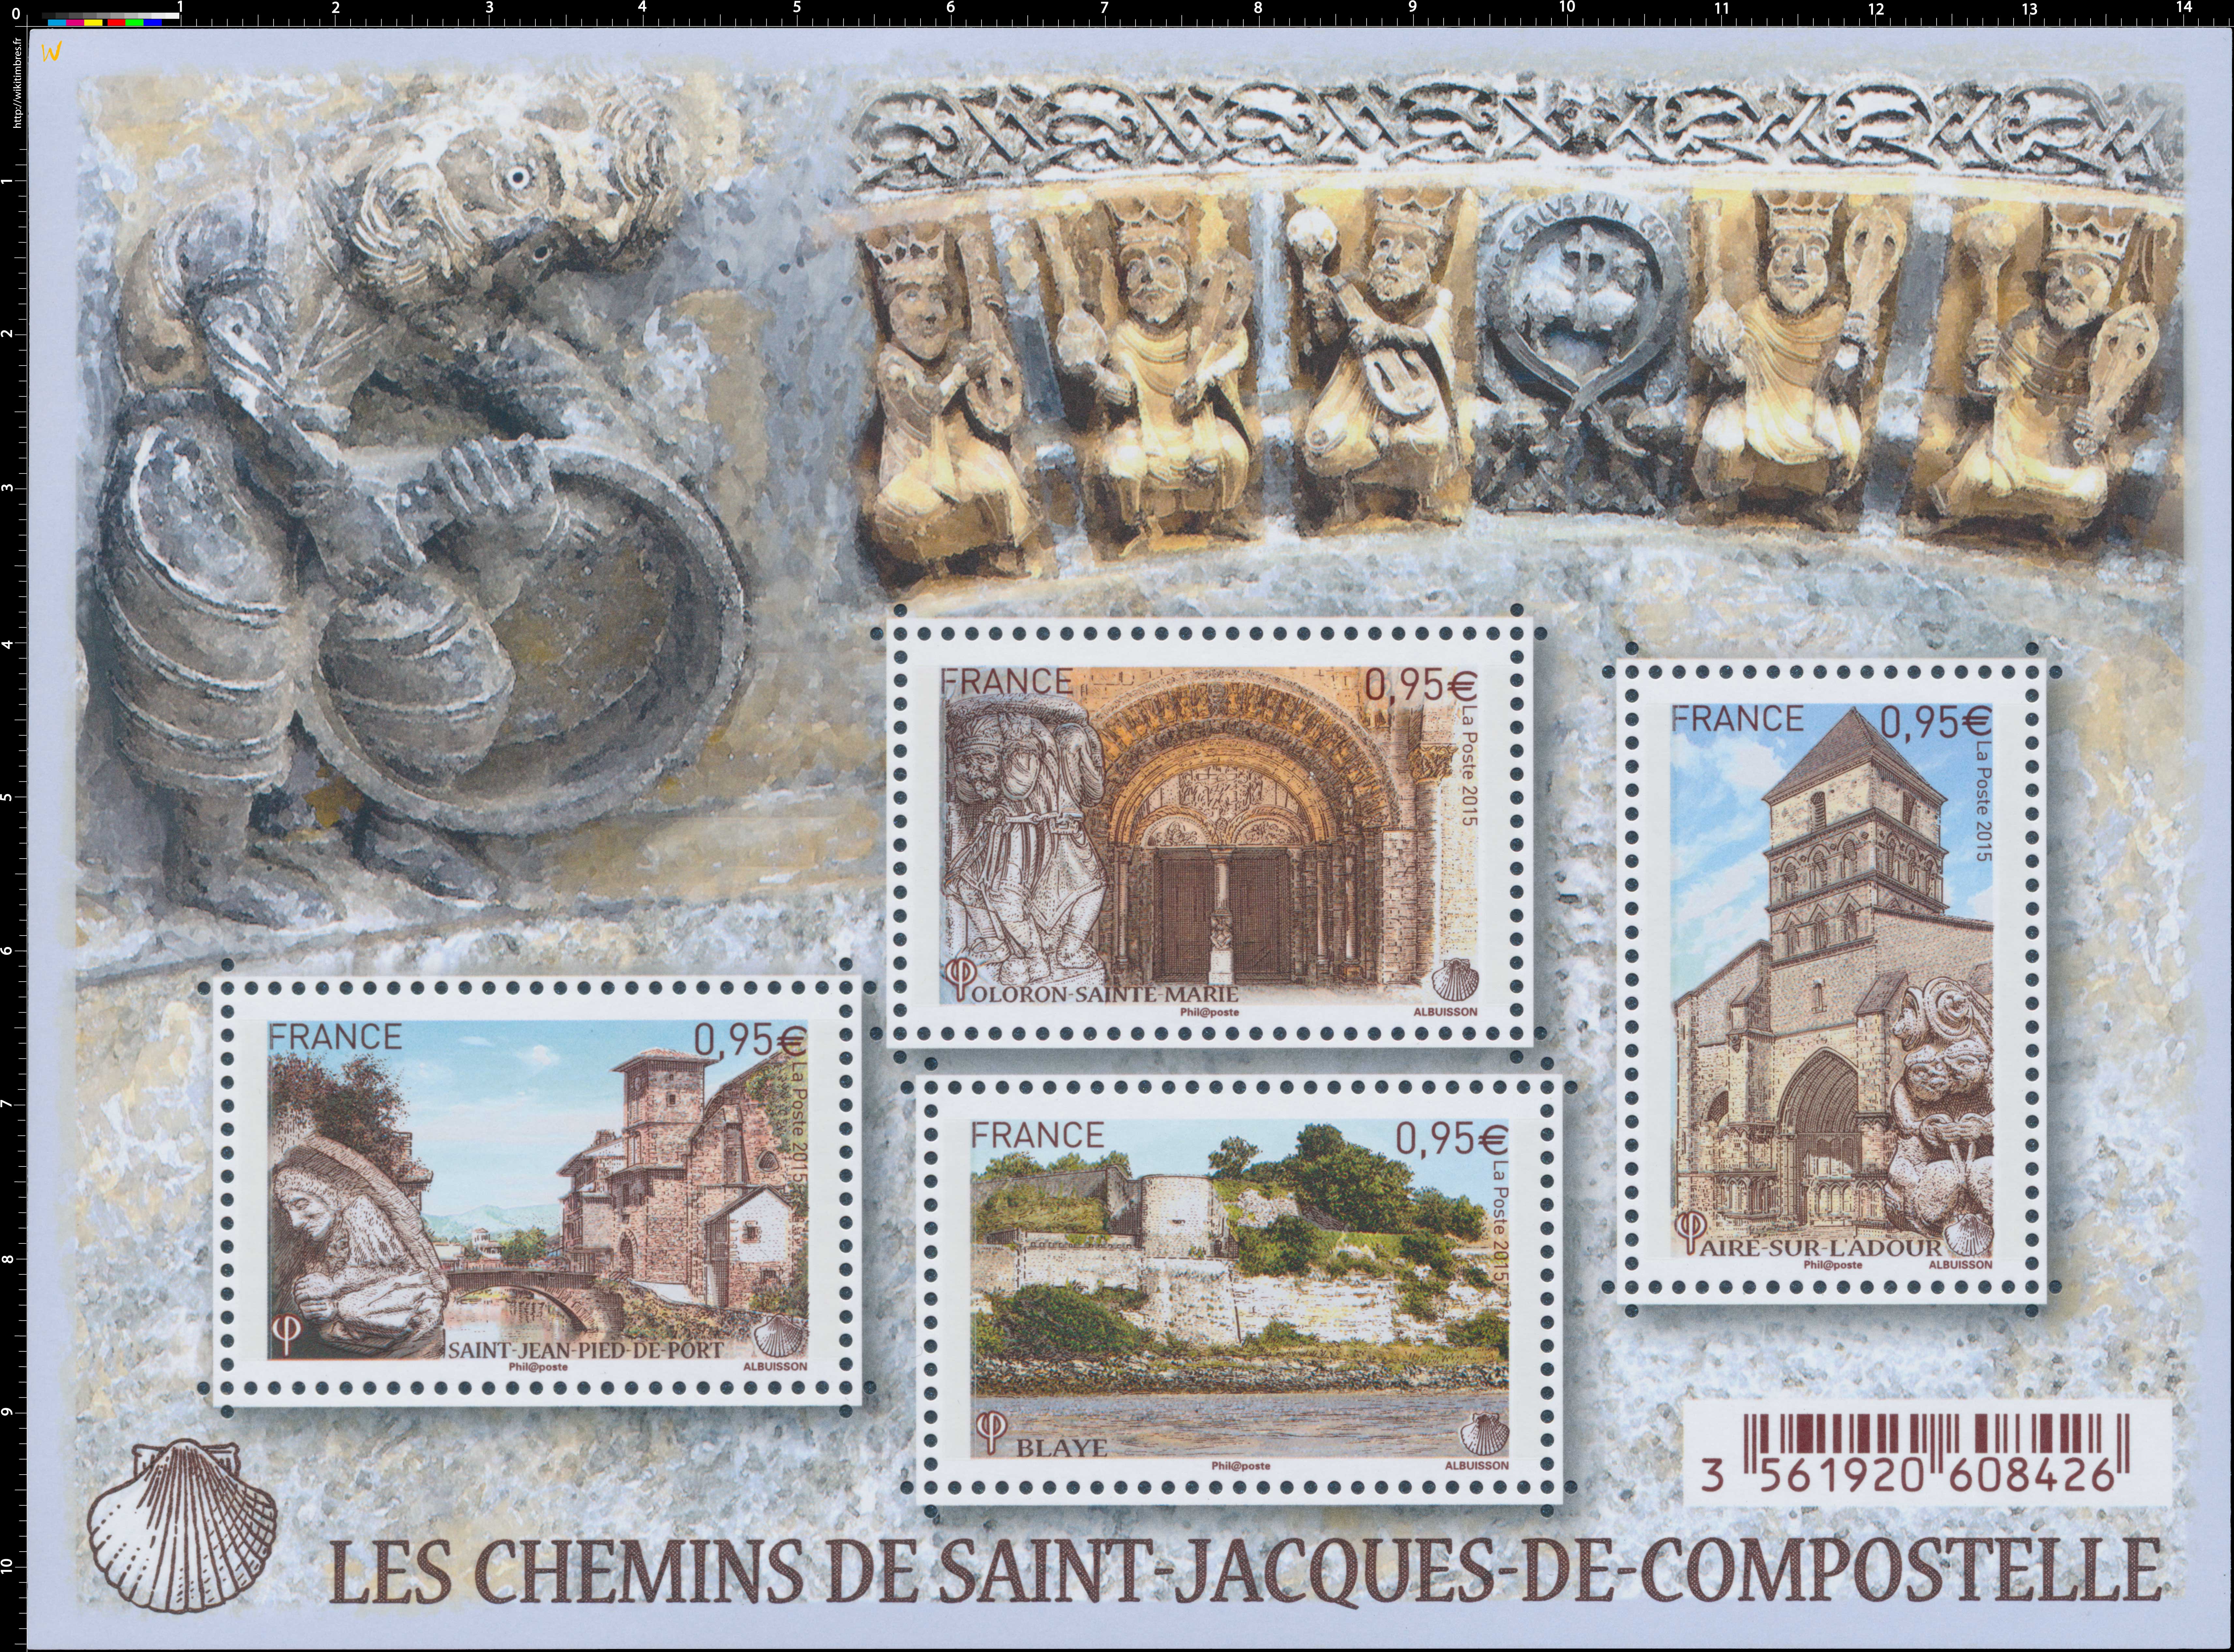 2015 Les chemins de Saint-Jacques-de-Compostelle